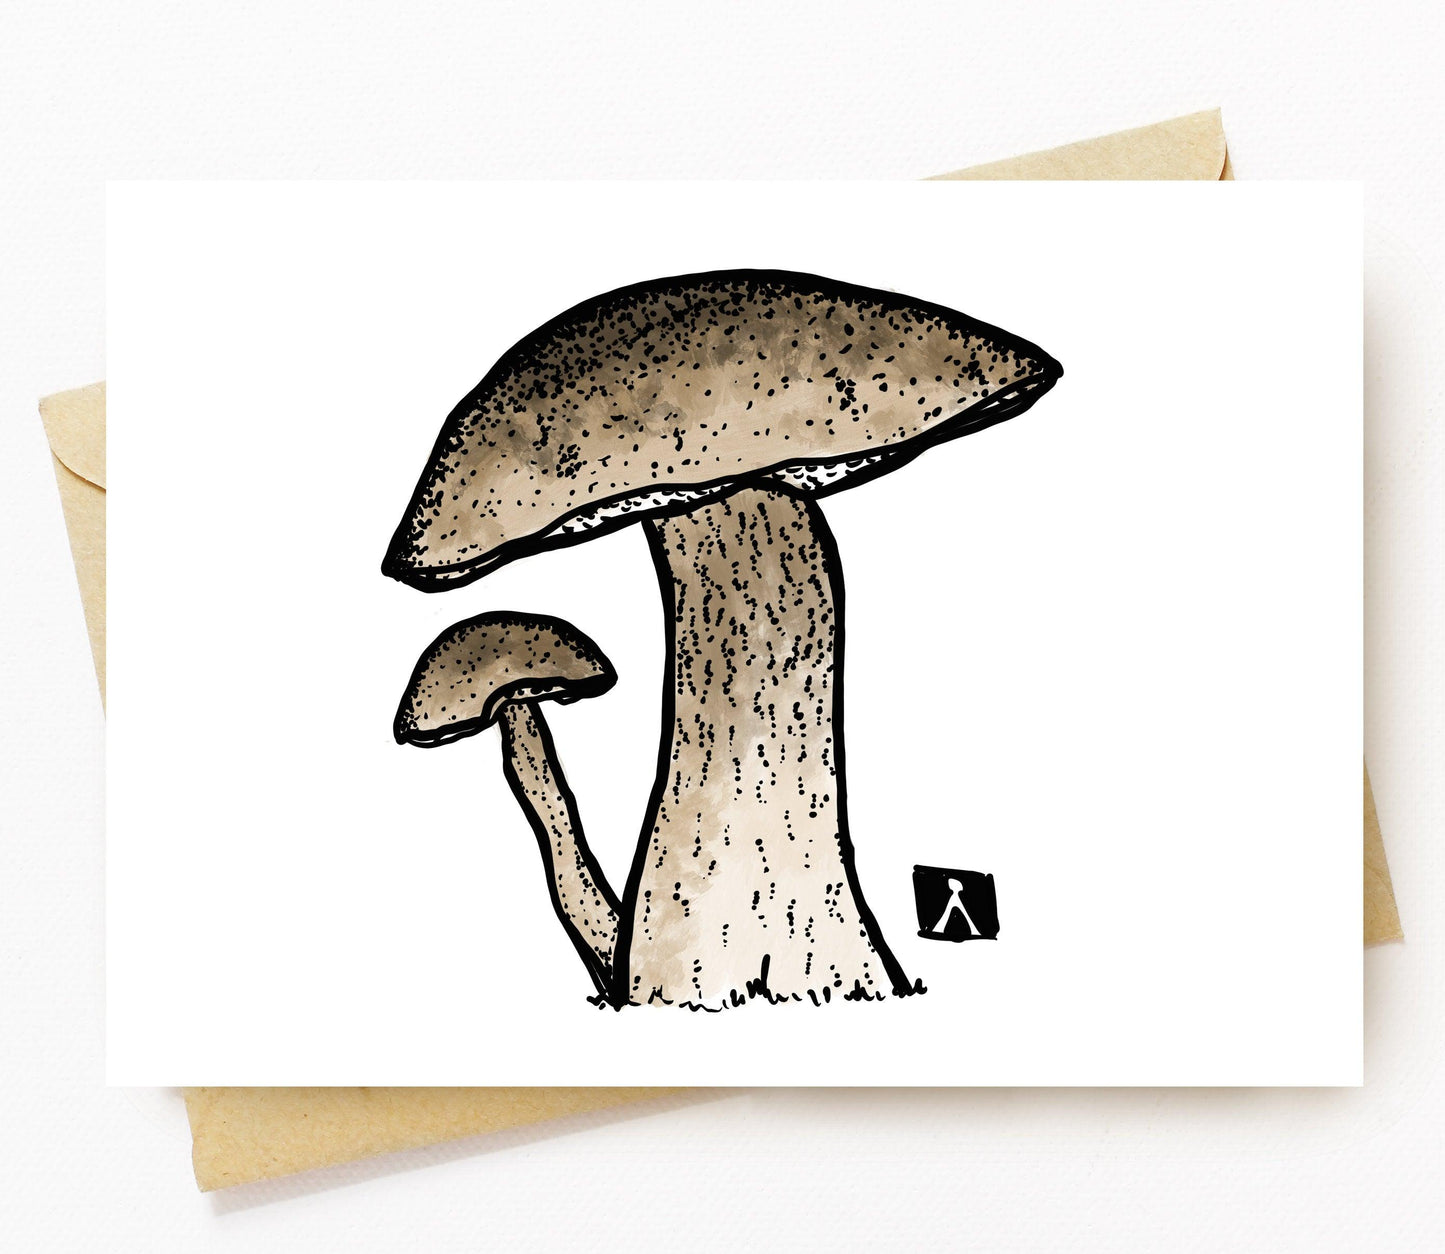 BellavanceInk: Greeting Card With a Pen & Ink Drawing/Watercolor of Porcini Mushrooms - BellavanceInk